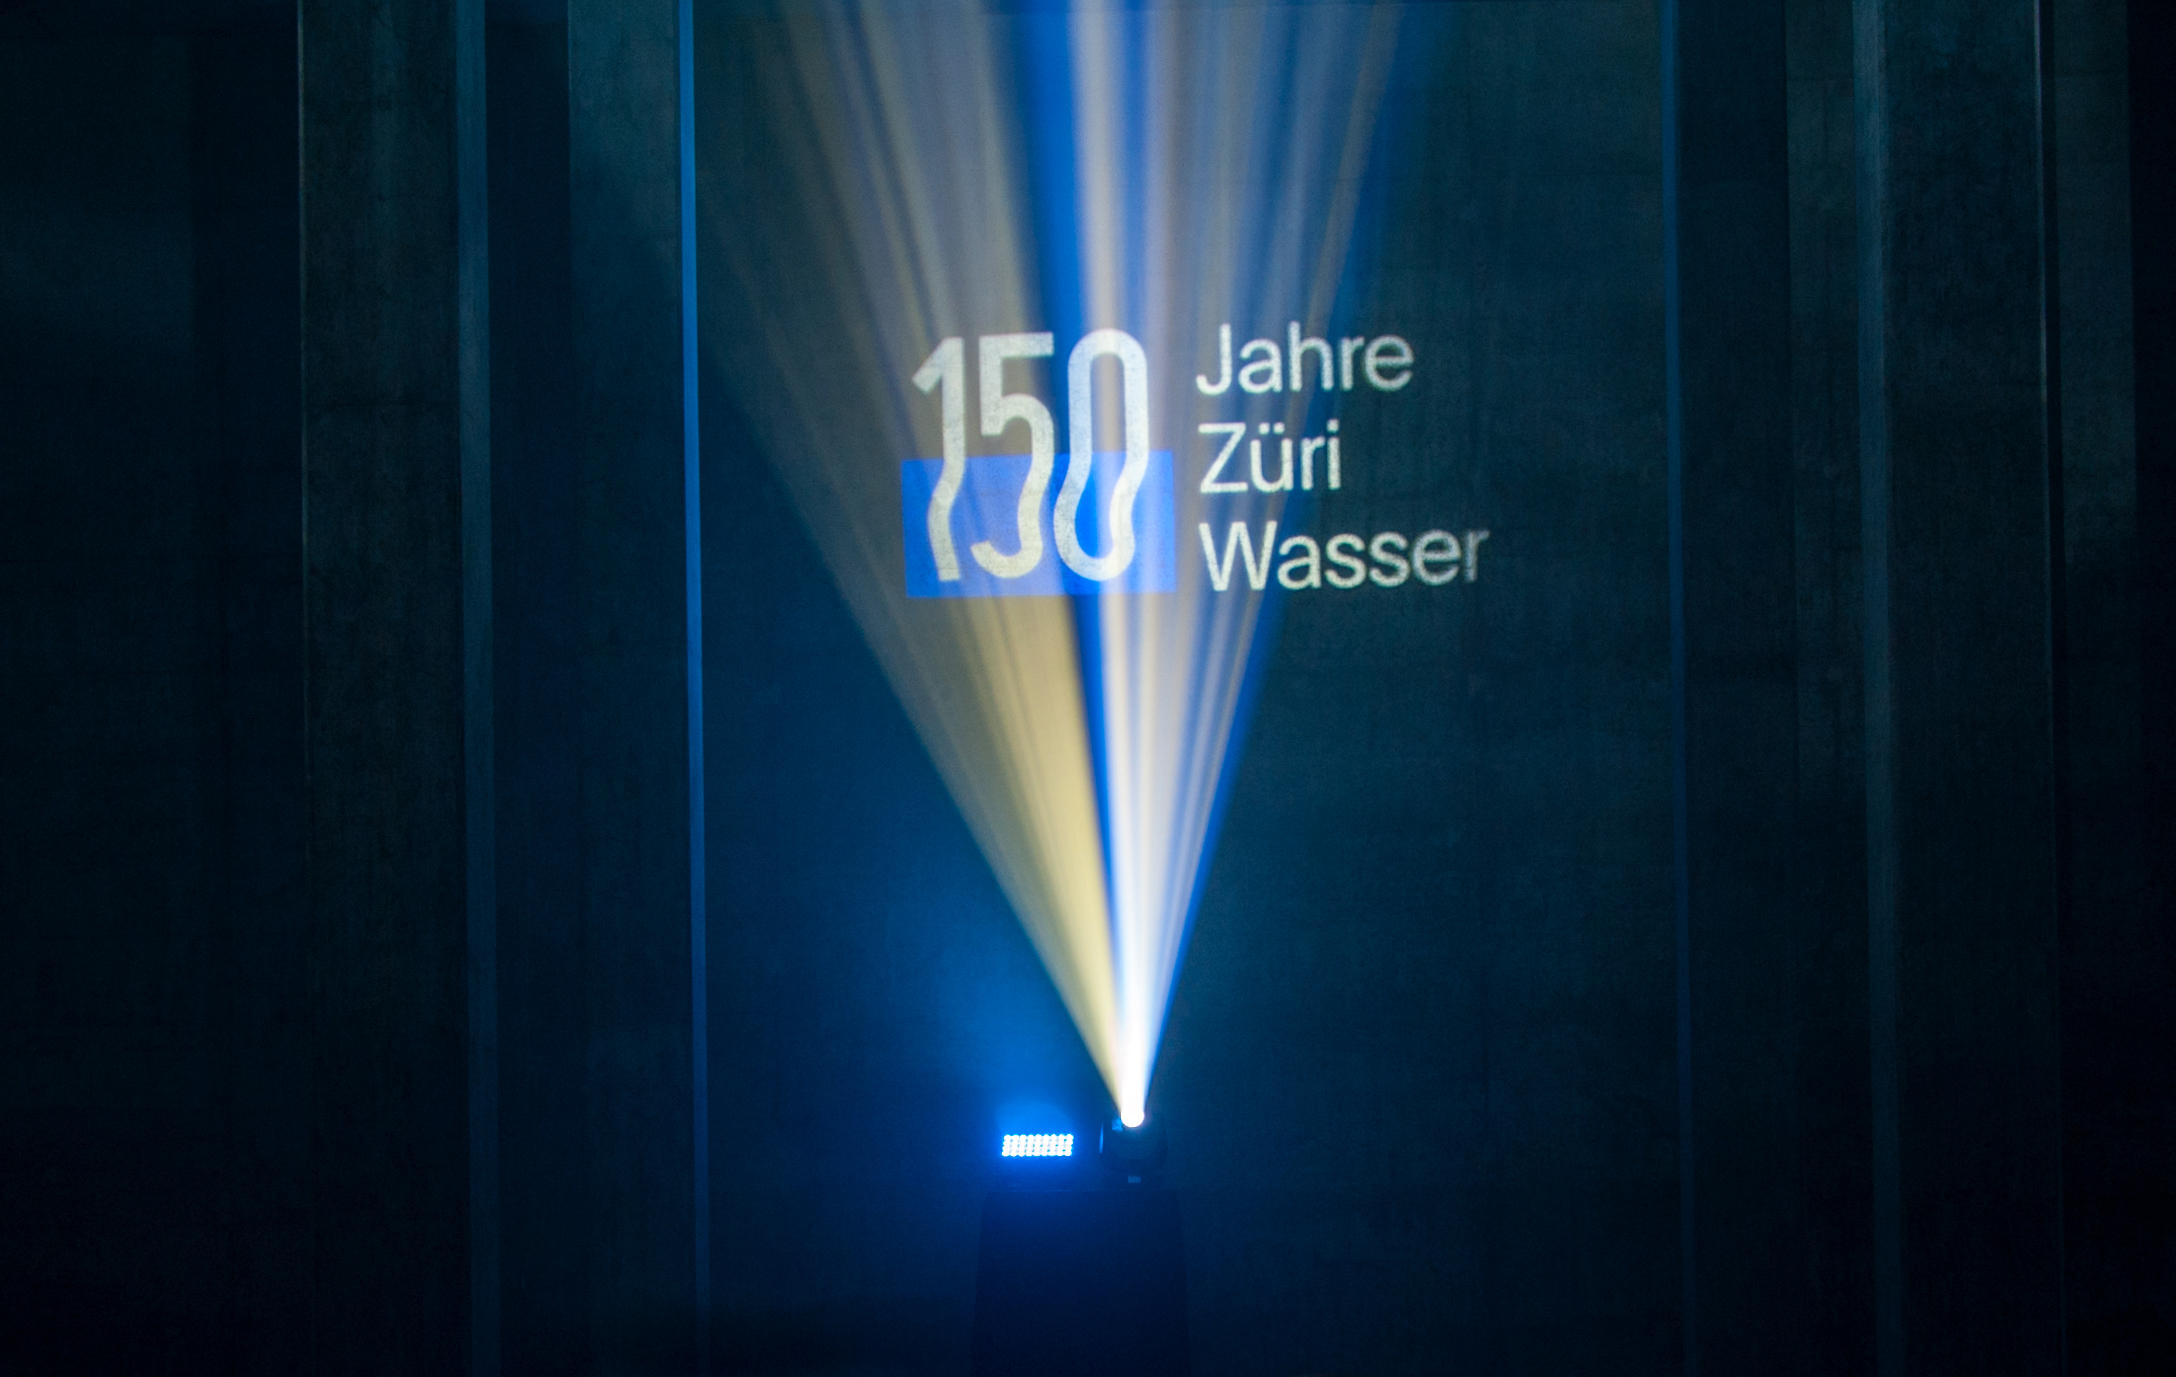 Lichtprojektion 150 Jahre Züri Wasser im unterirdischen Trinkwasserreservoir Lyren in Zürich Altstetten